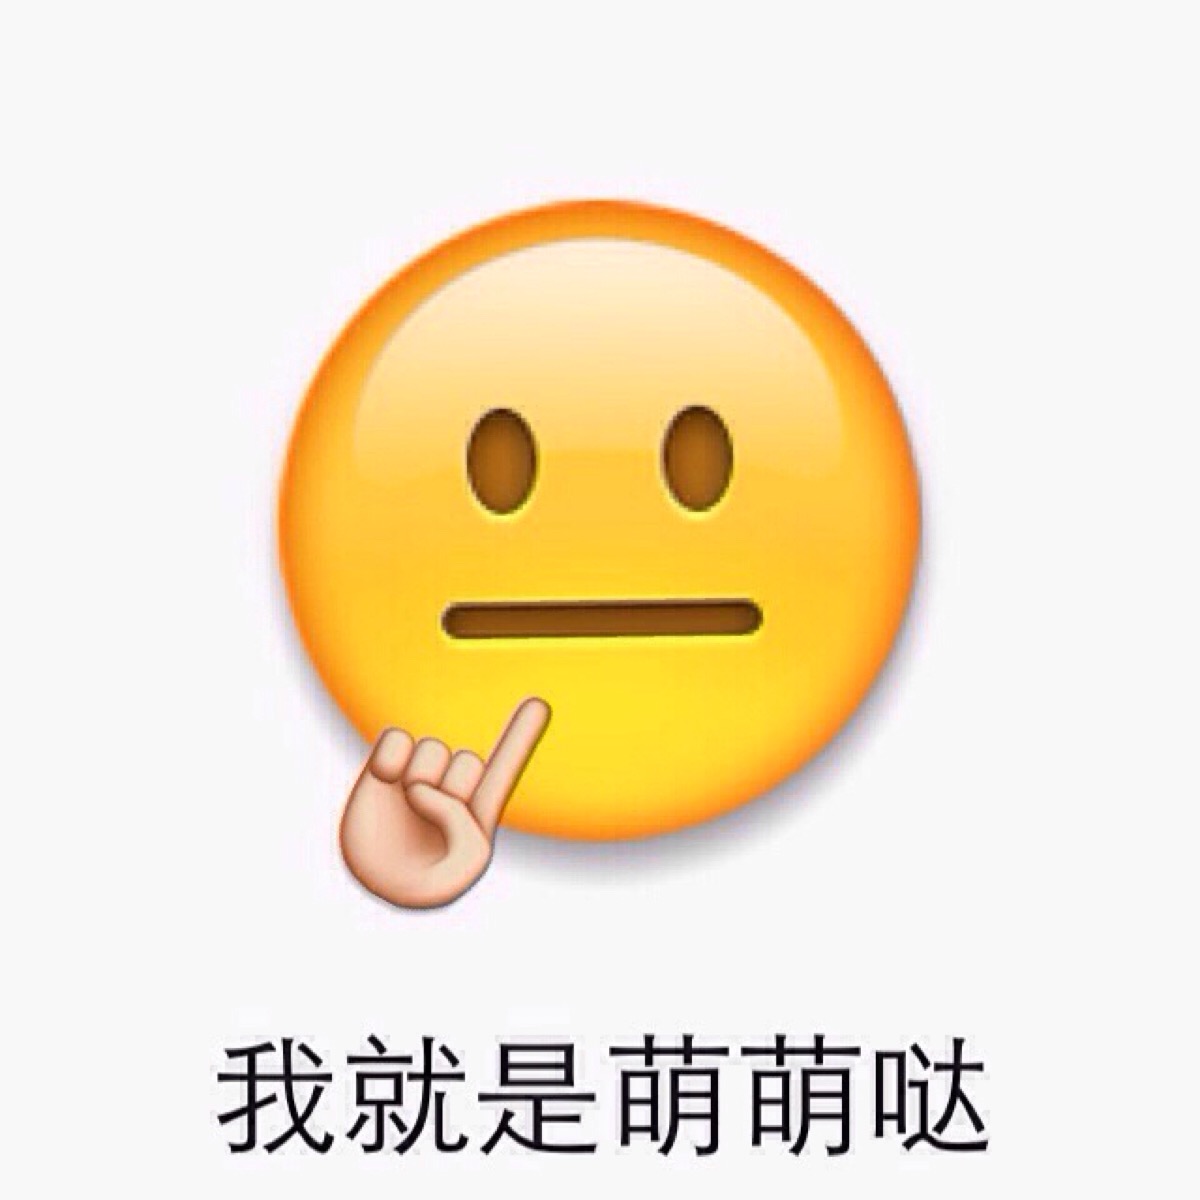 饺子、外卖、新娘……苹果又出了一大波新 Emoji ，想升级吗？